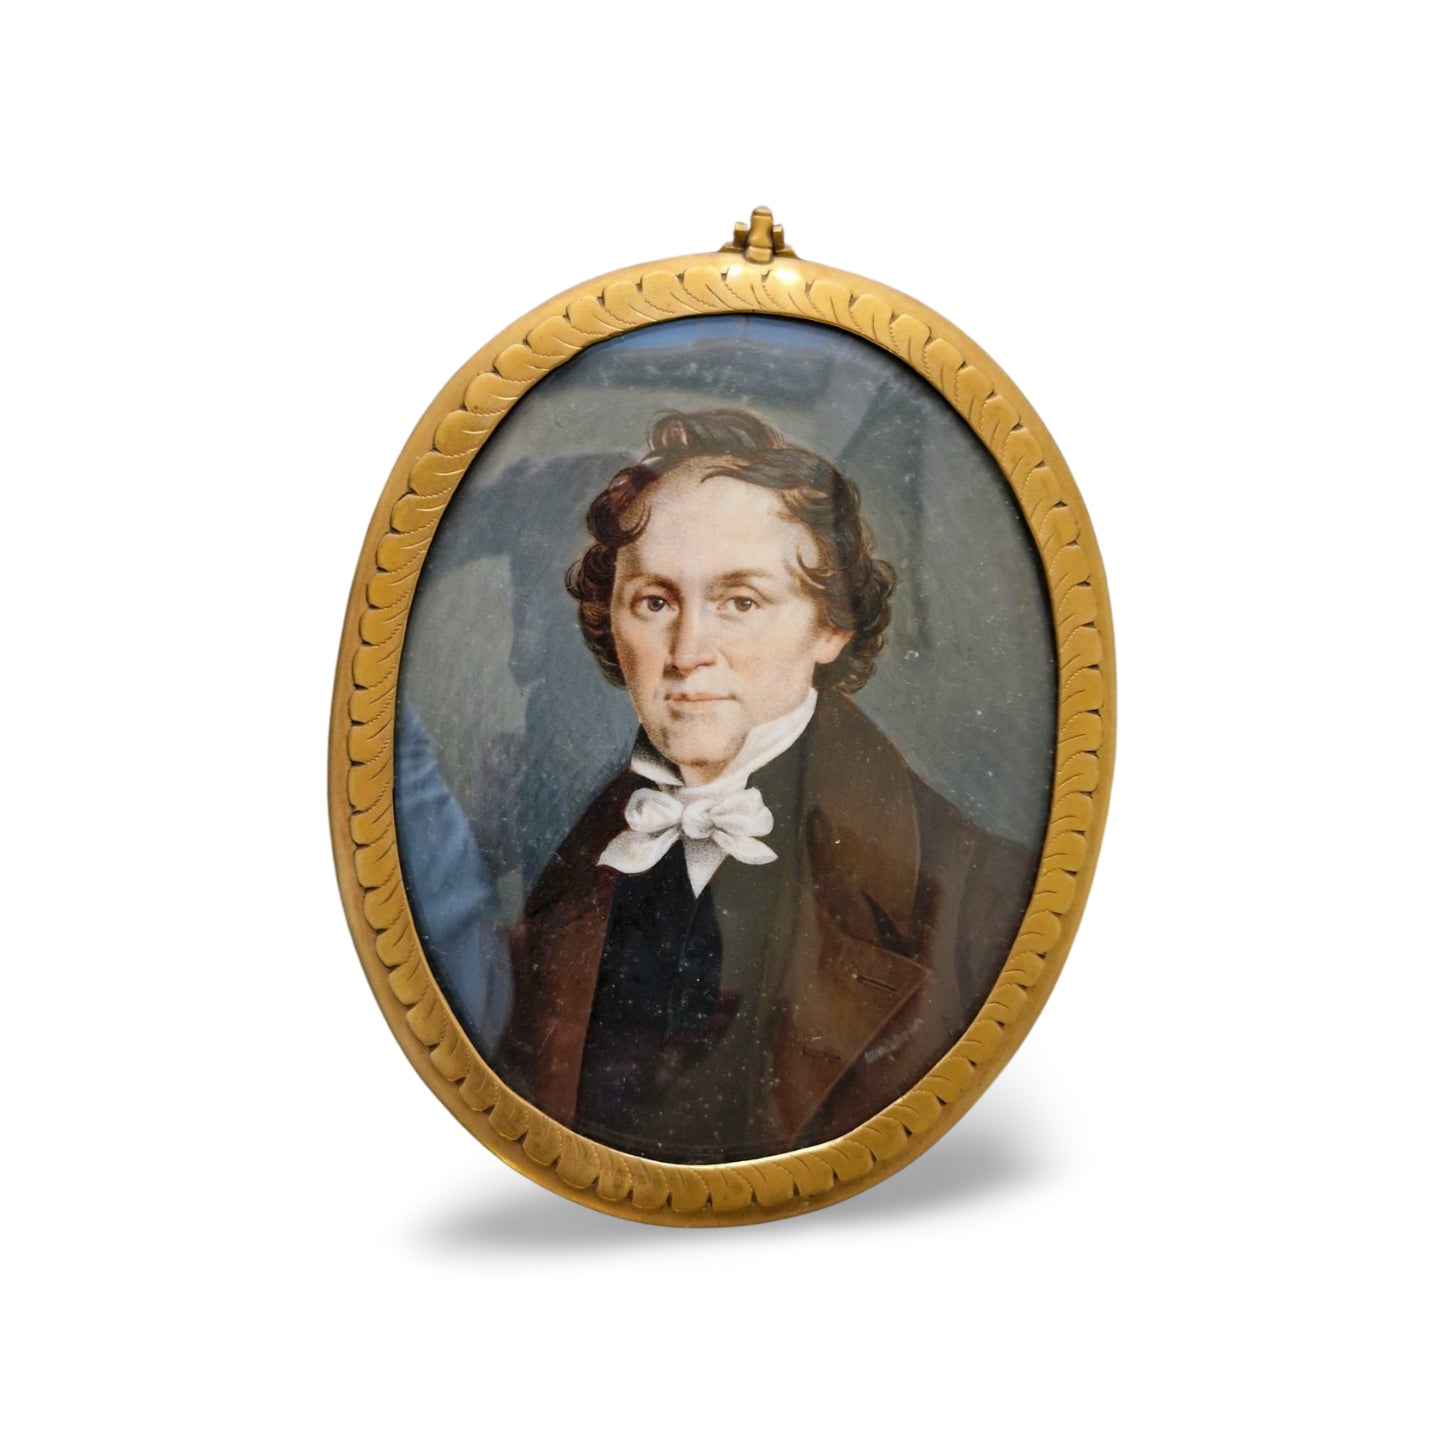 Portrait miniature of a mature gentleman